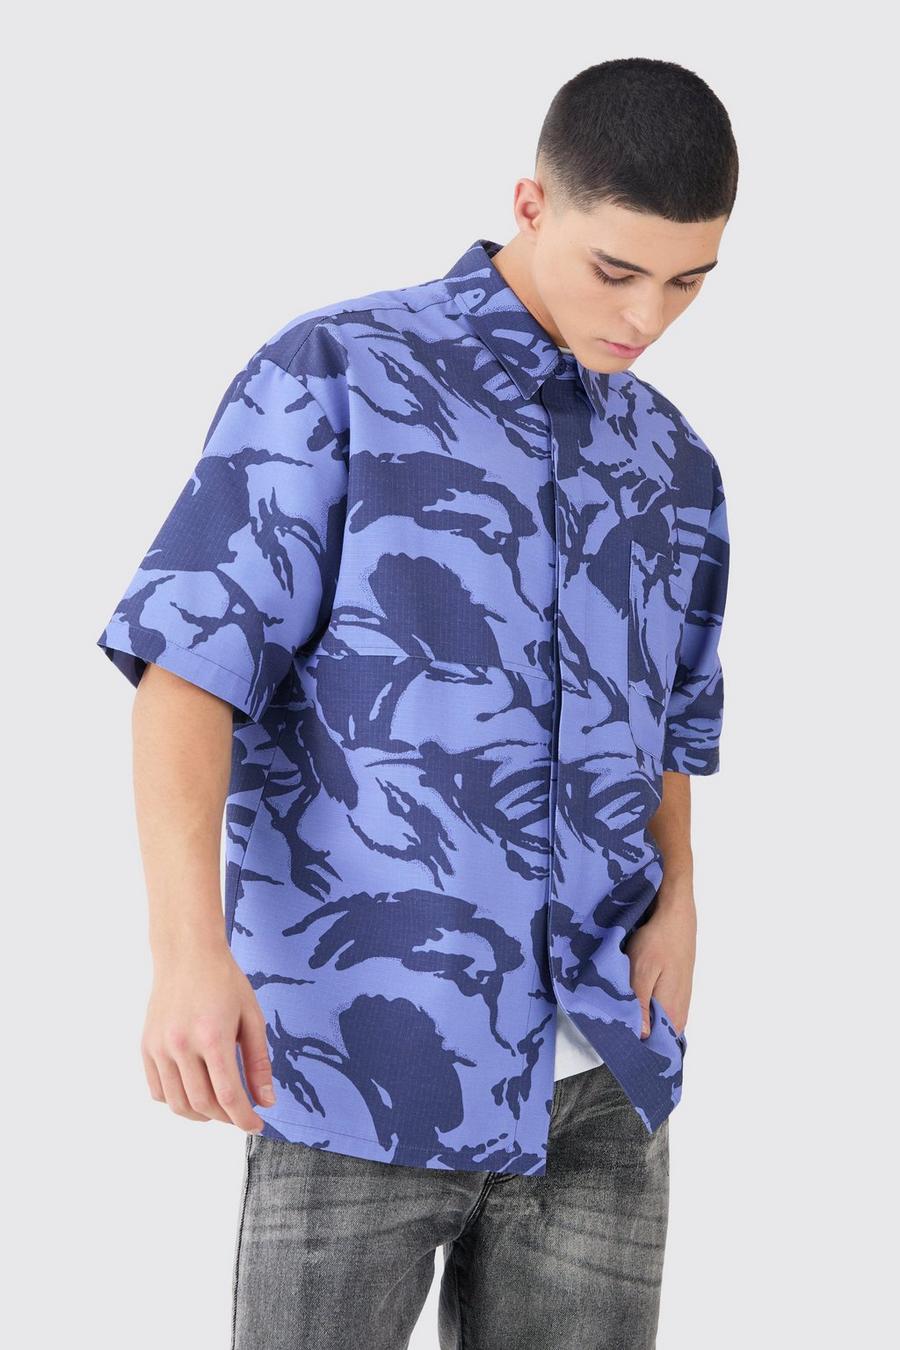 Camicia squadrata oversize in nylon ripstop in fantasia militare, Blue